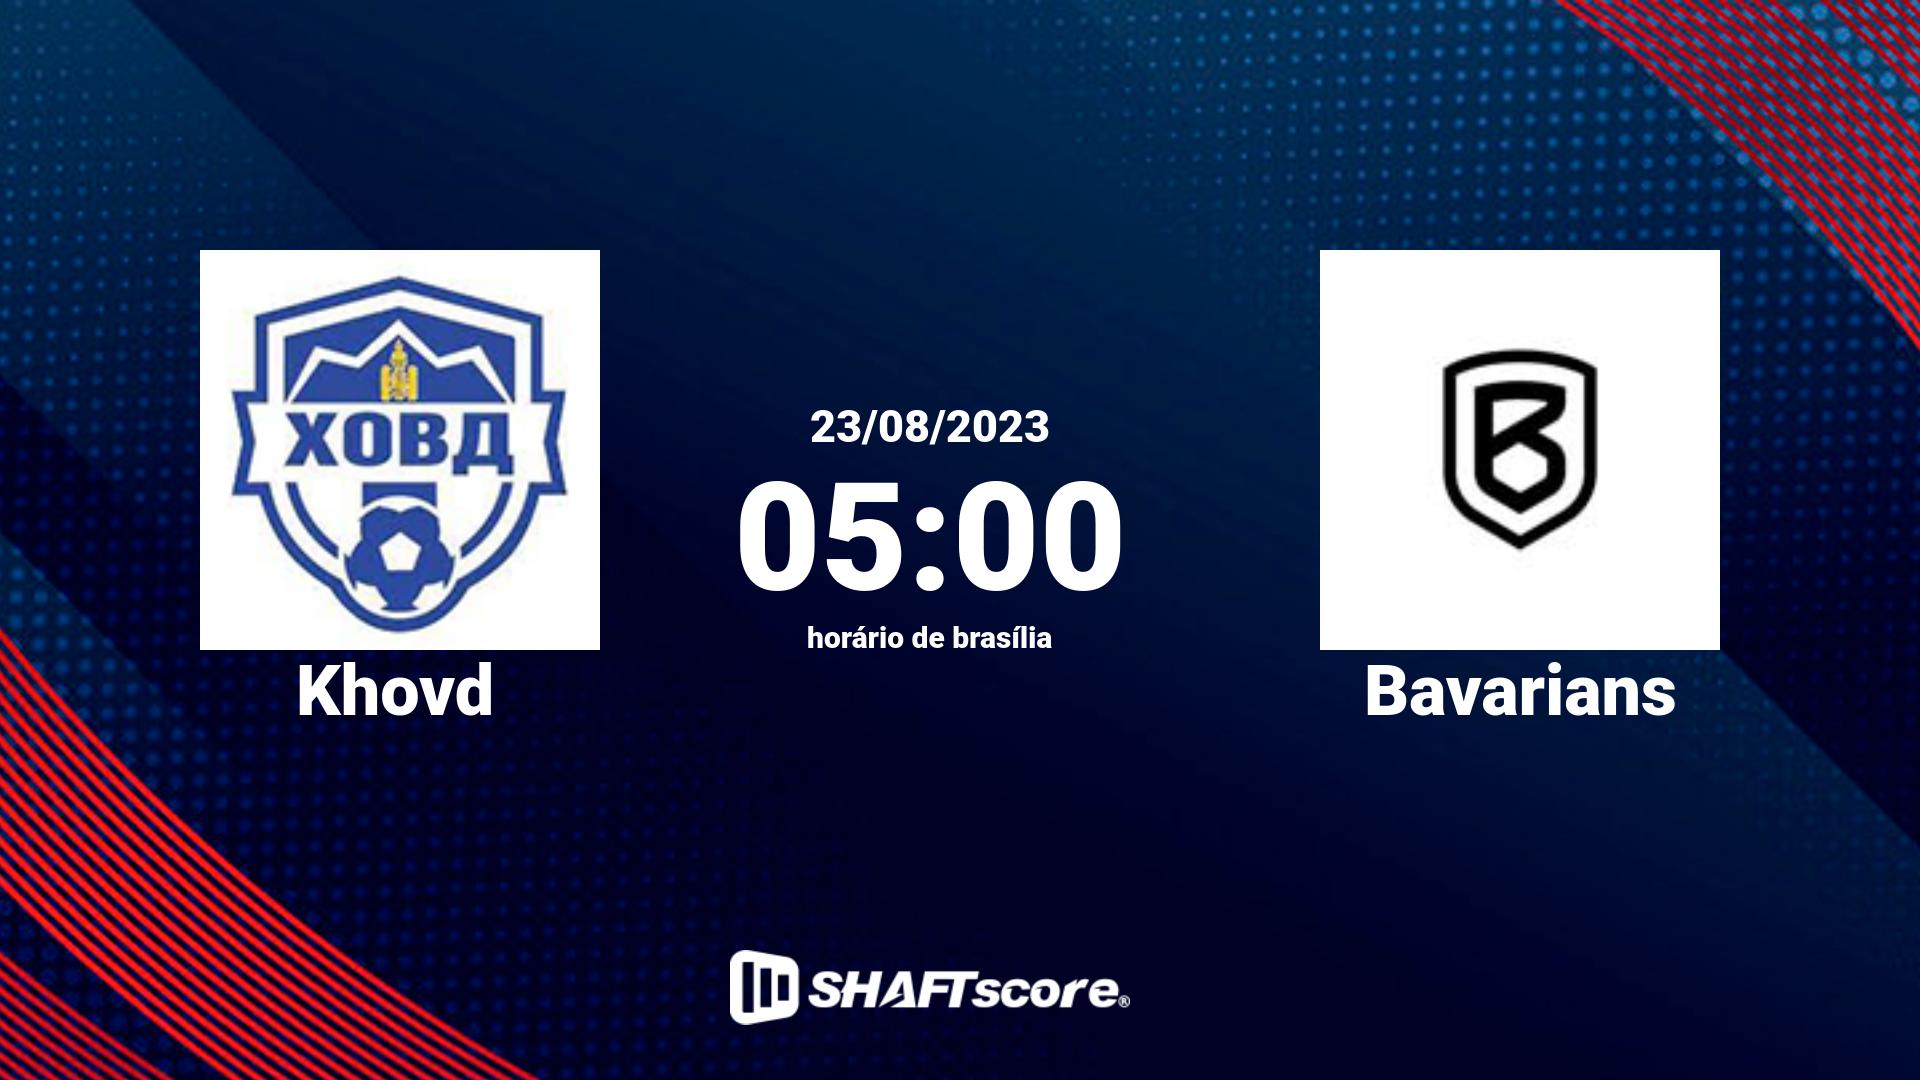 Estatísticas do jogo Khovd vs Bavarians 23.08 05:00